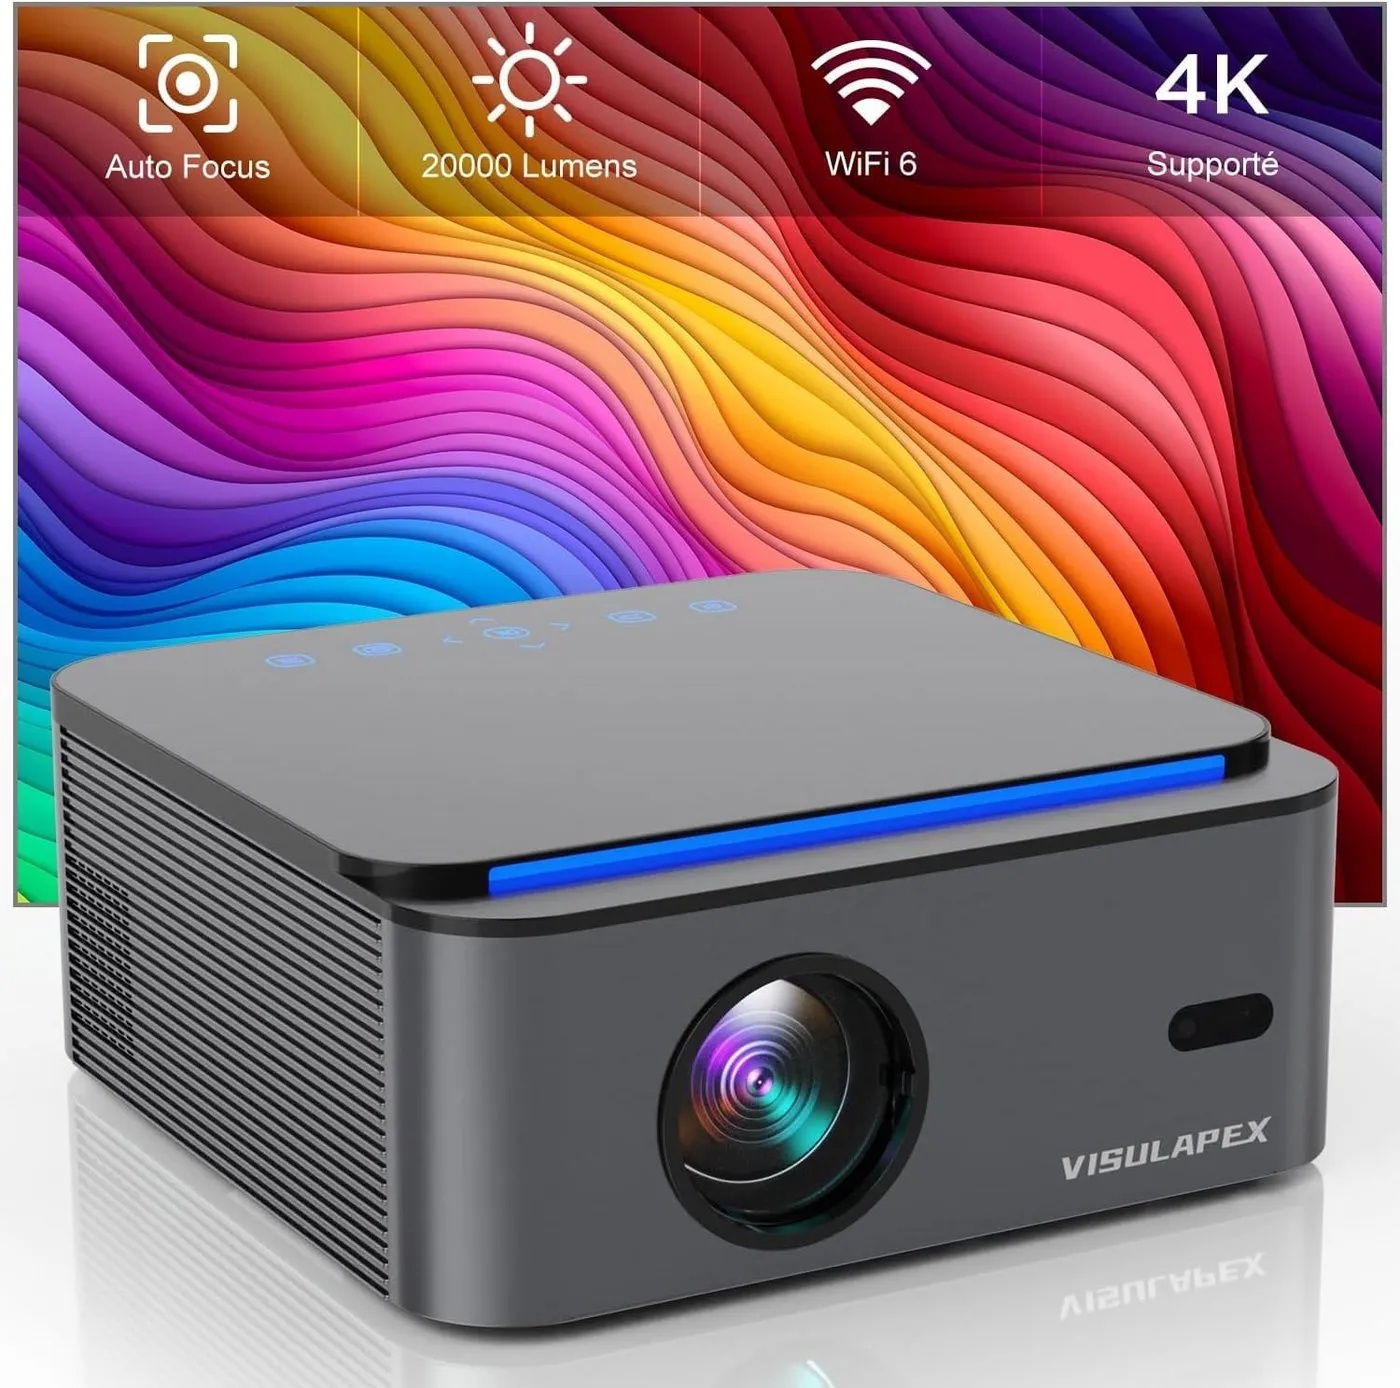 VISULAPEX Autofokus/Trapezkorrektur WiFi6 1080P Full HD 4K Unterstützt Heimkino Portabler Projektor (20000 lm, 18000:1, 3840*2160 px, kompatibel mit Smartphone/TV Stick/PS5) schwarz